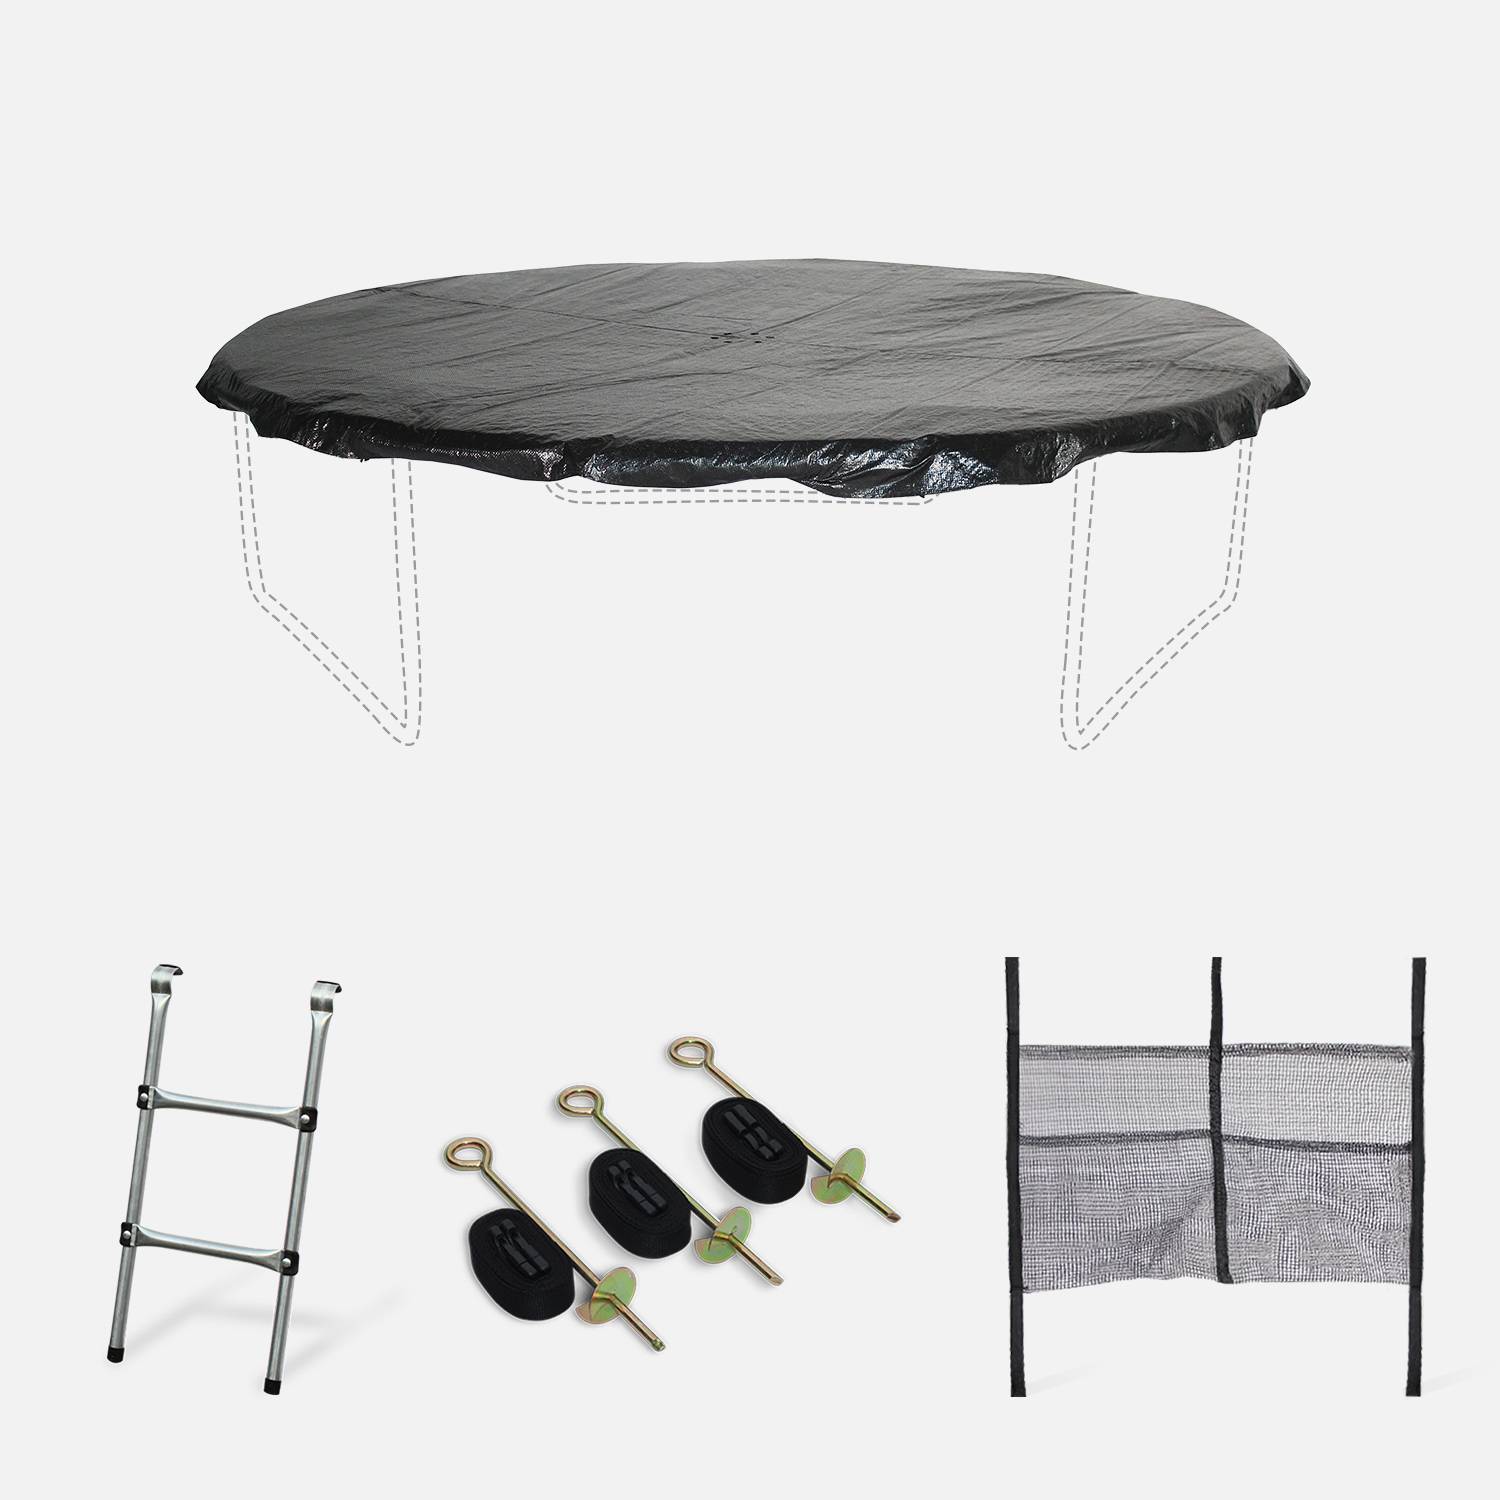 Pakket met accessoires voor trampoline Ø305cm Mars, Mars Inner en Verseau met een ladder, een beschermhoes, een opbergnet voor schoenen en een verankeringskit Photo1